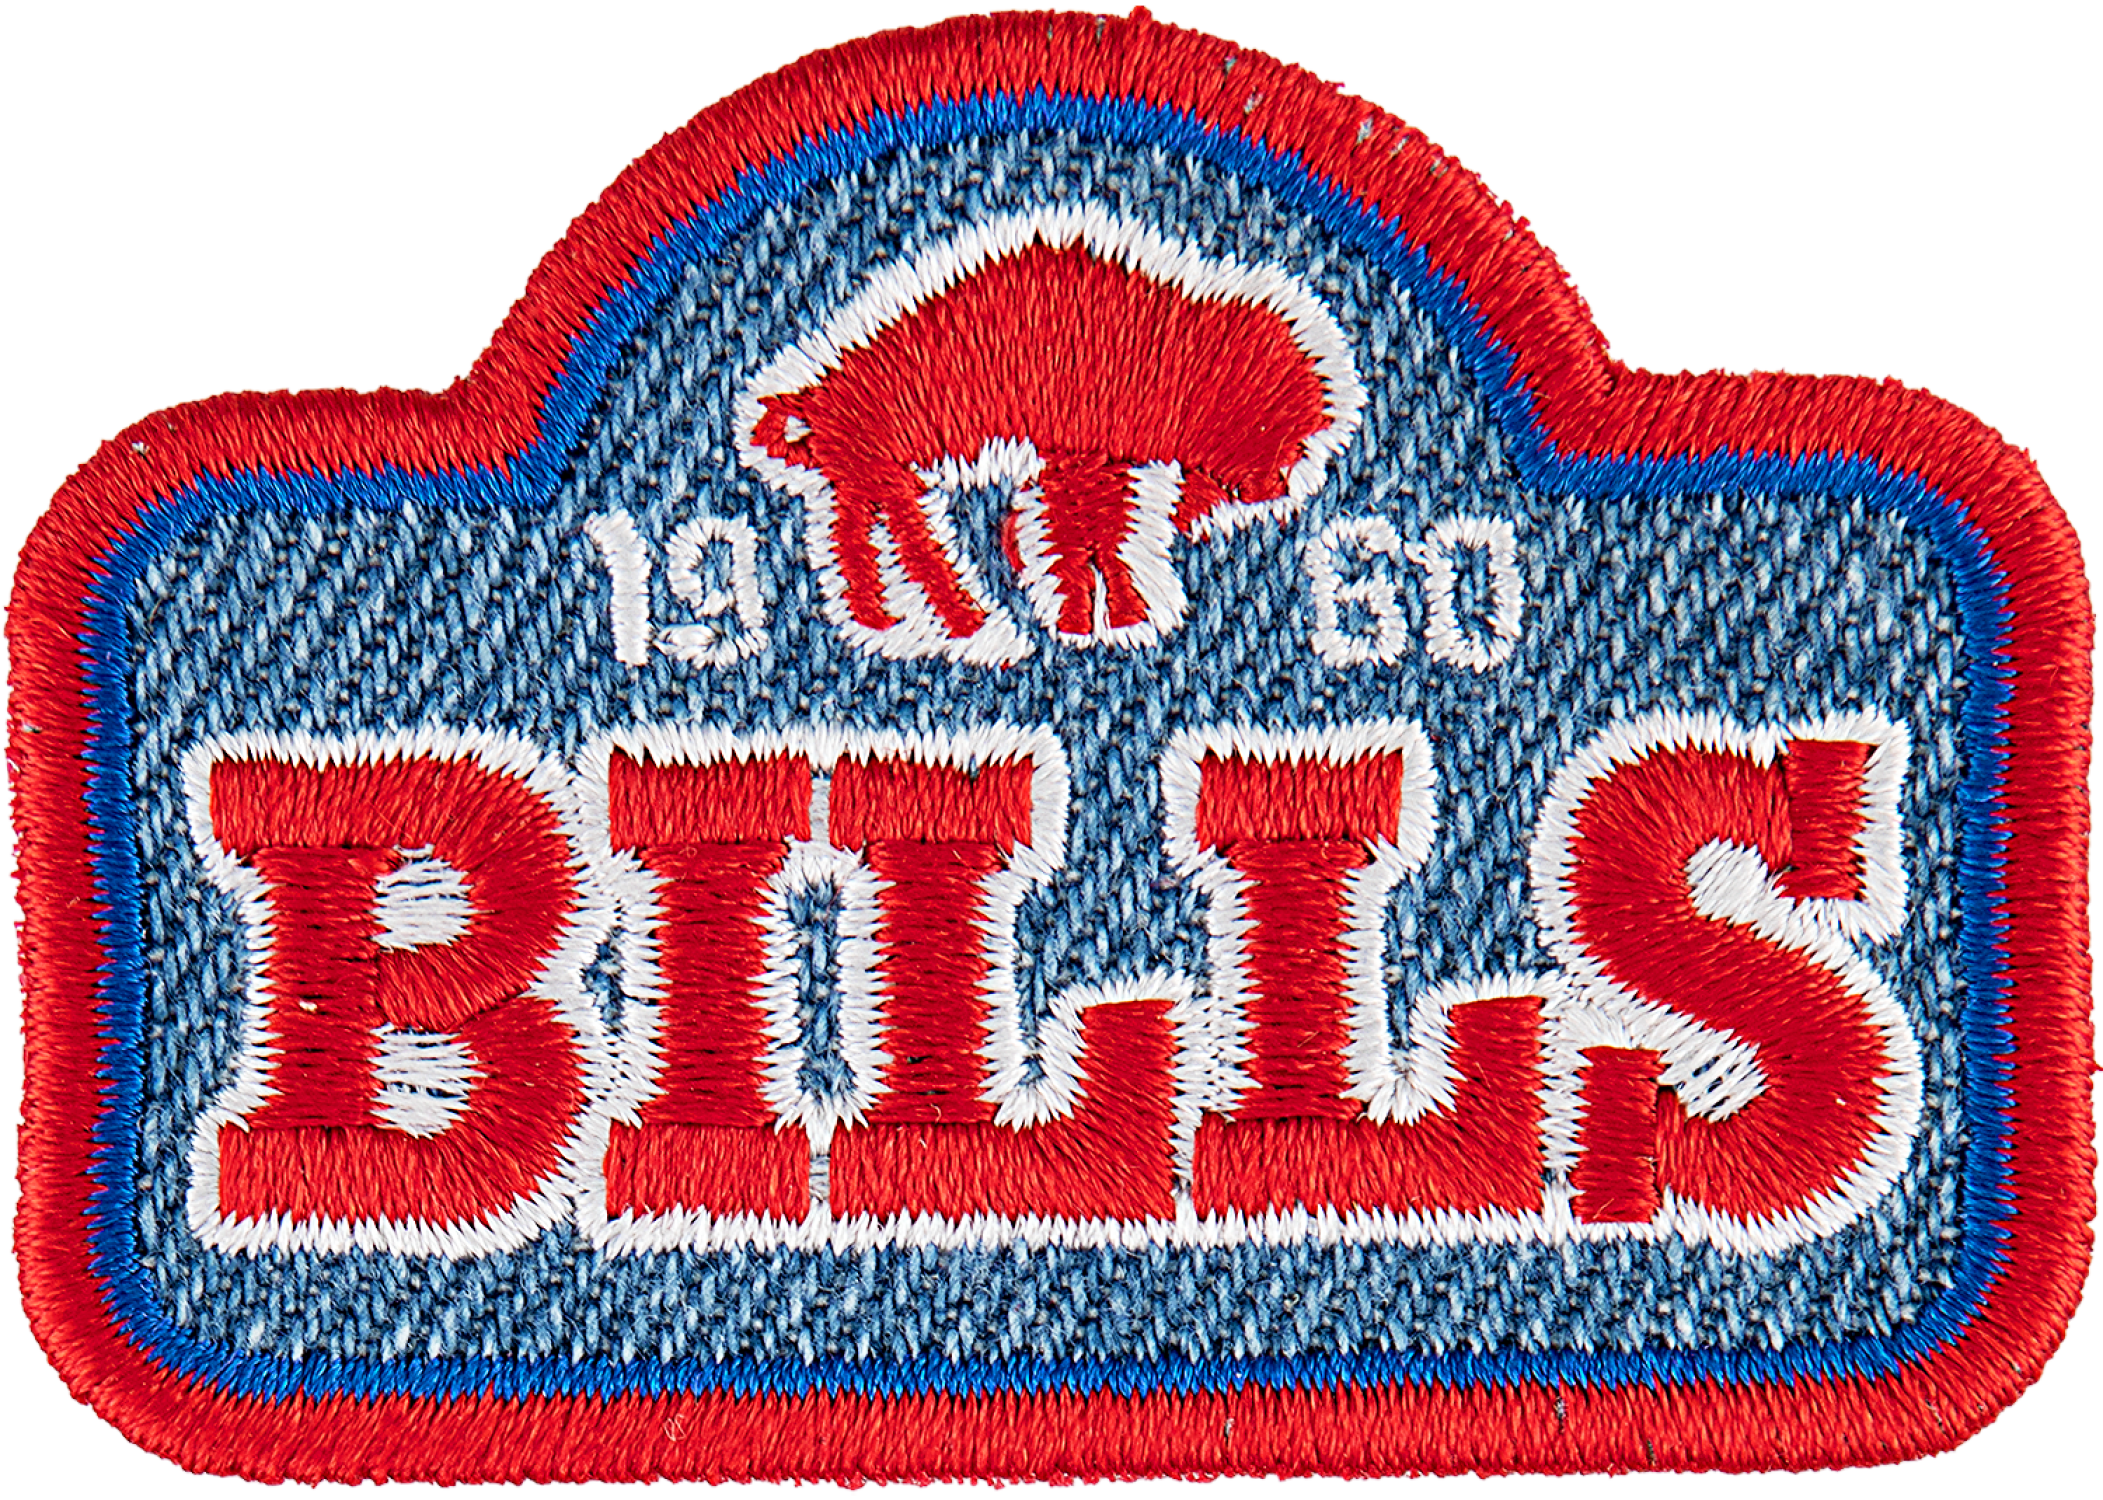  Buffalo Bills Patches